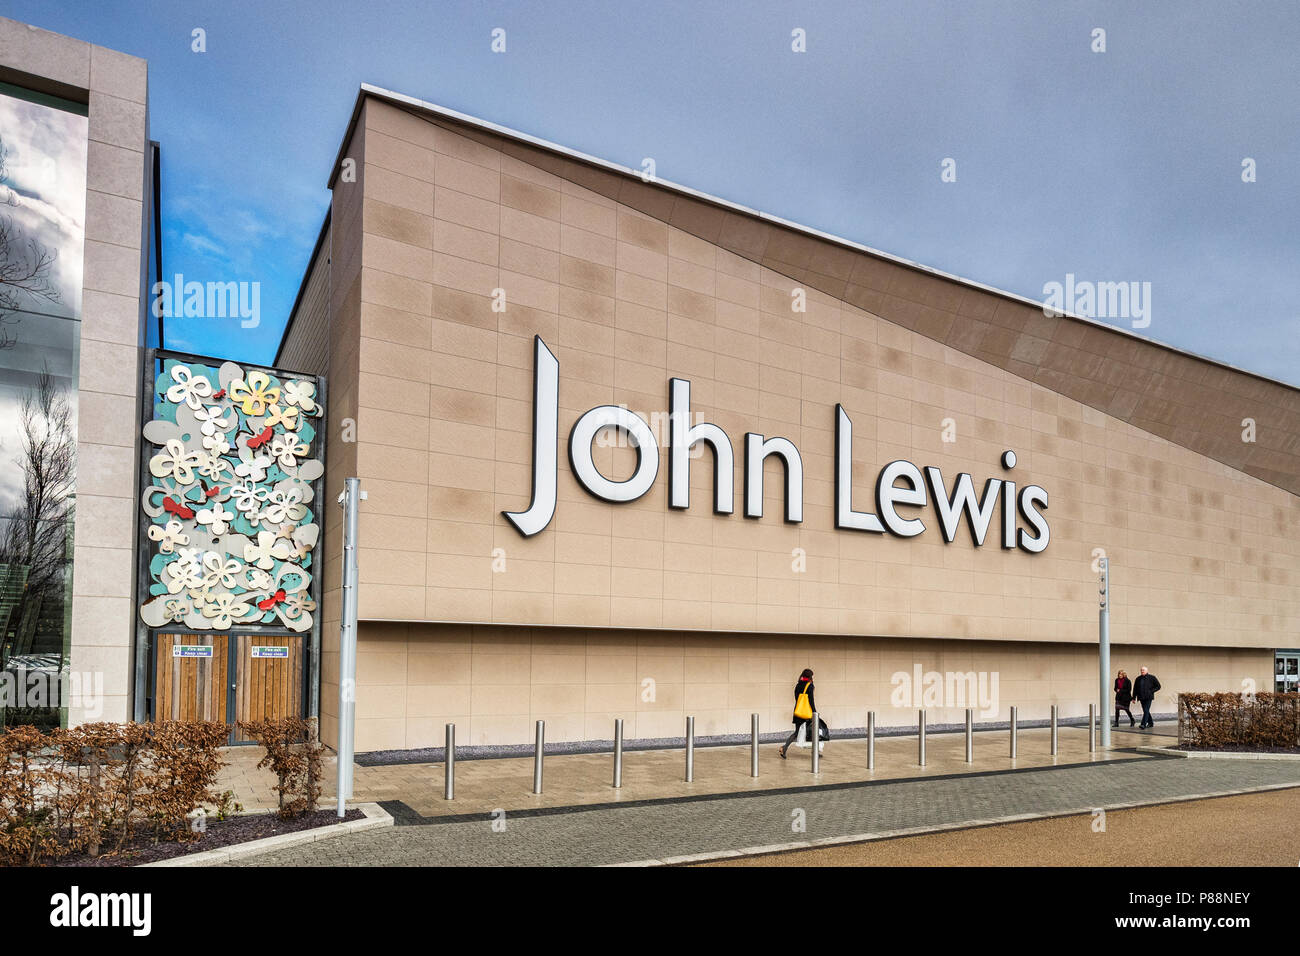 2 febbraio 2018: York, North Yorkshire, Regno Unito - Vangarde Shopping Centre, con John Lewis, gli amanti dello shopping a piedi lungo. Foto Stock